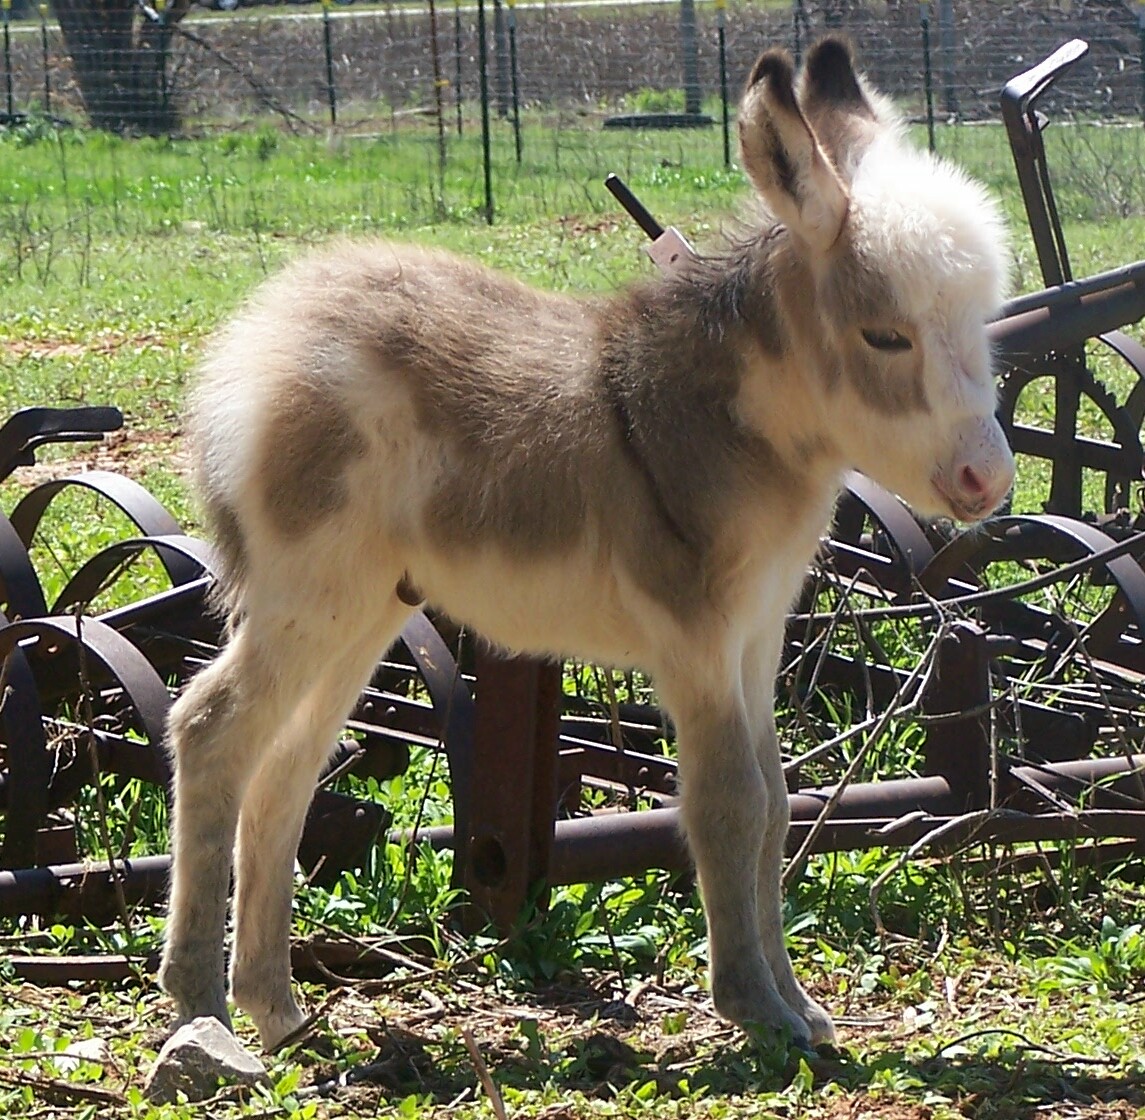 http://3.bp.blogspot.com/-tYfo9eeBf3A/TnX443ECjOI/AAAAAAAADcw/_qC4PmwienM/s1600/Picture_7244-Baby_Donkey_4-02-2007.jpg